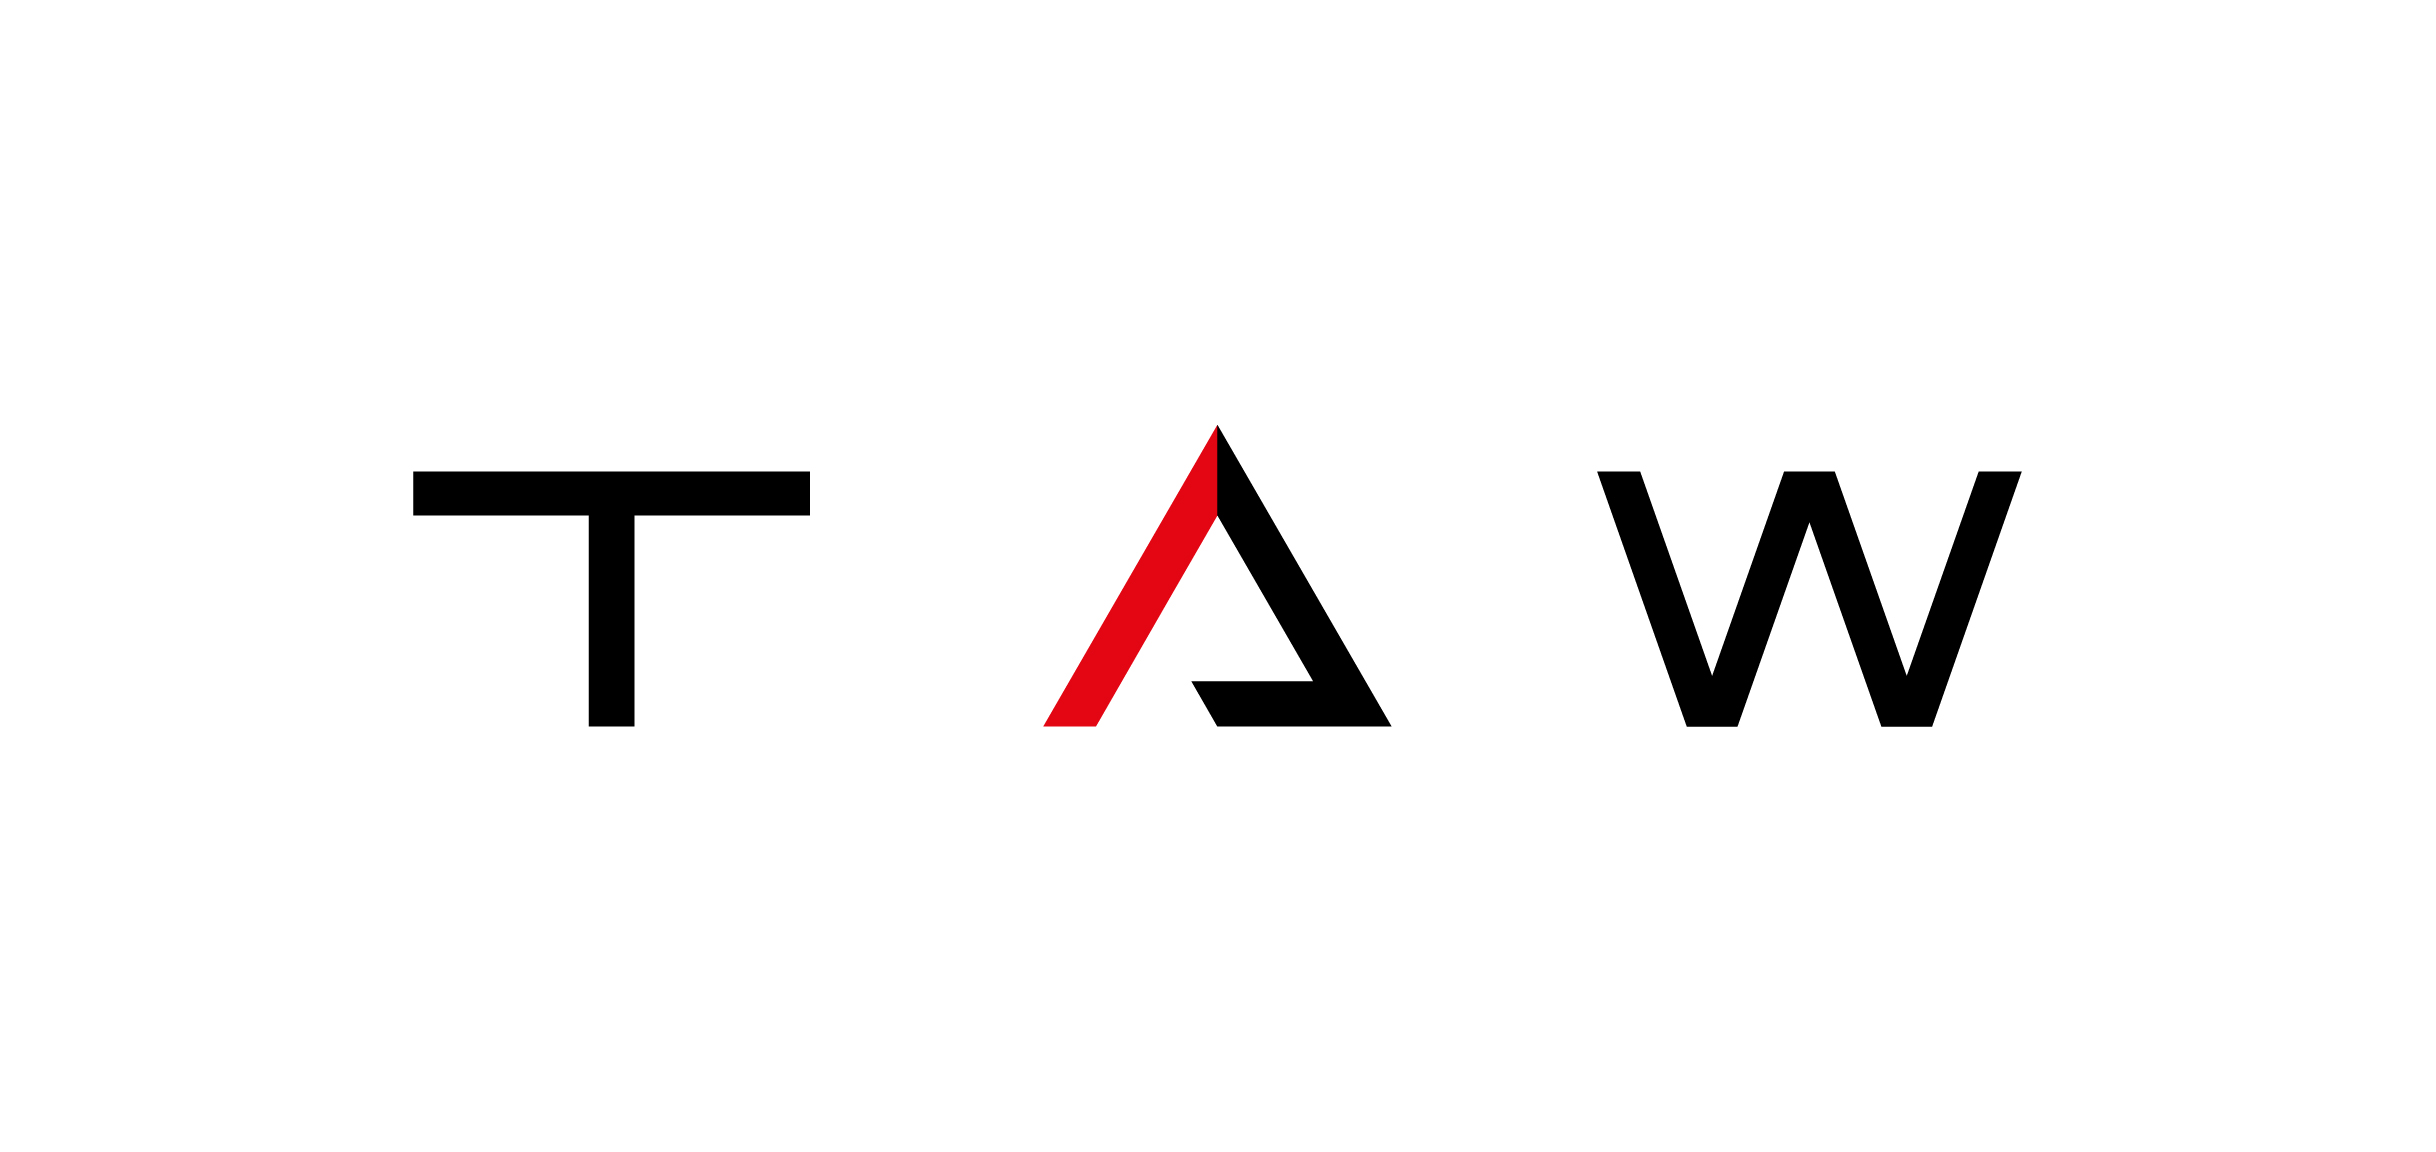 TAW - The Autonomous Way LLC